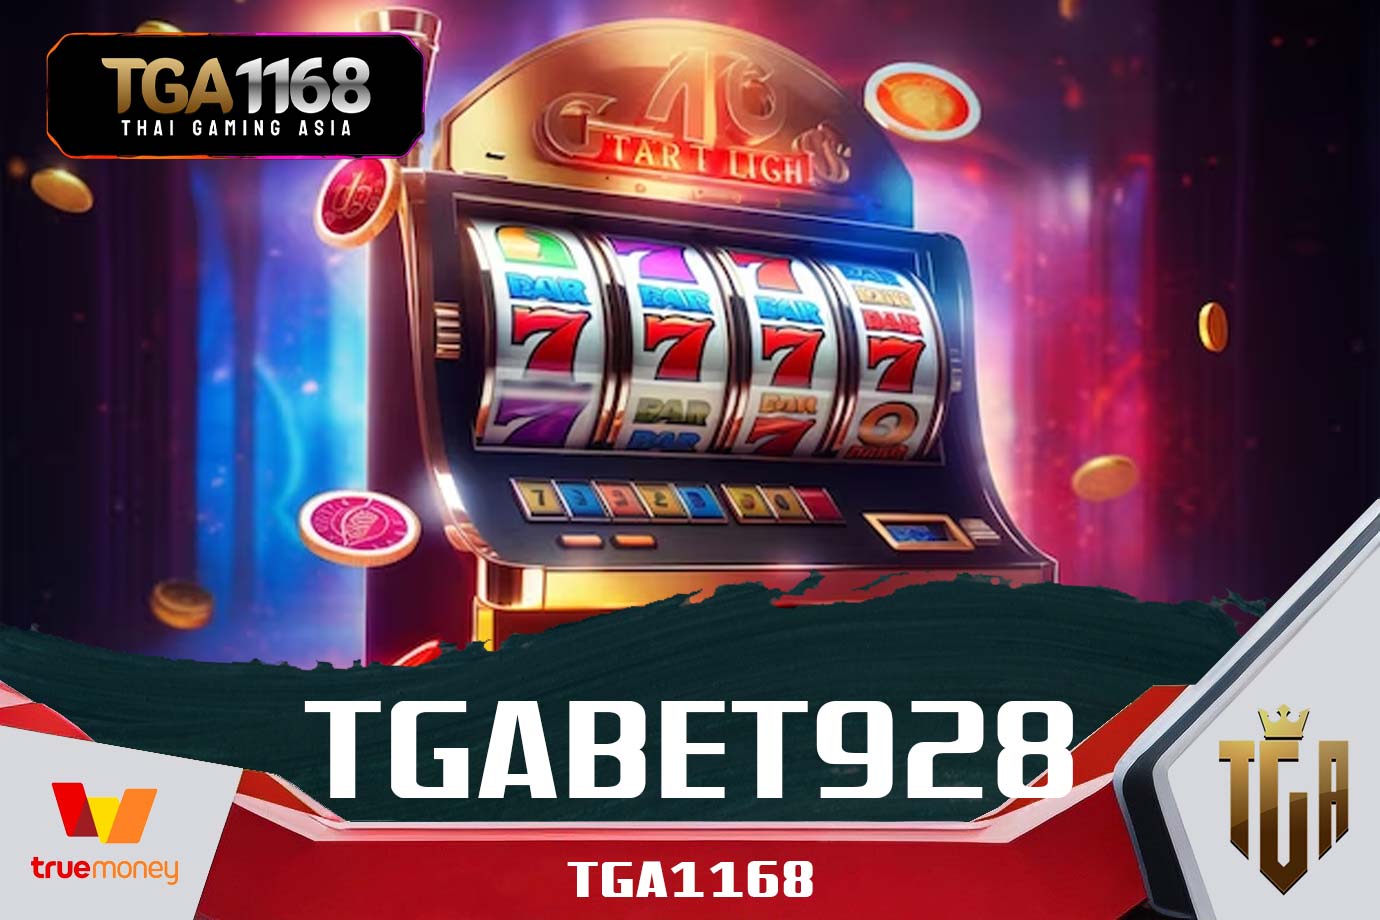 TGABET-928